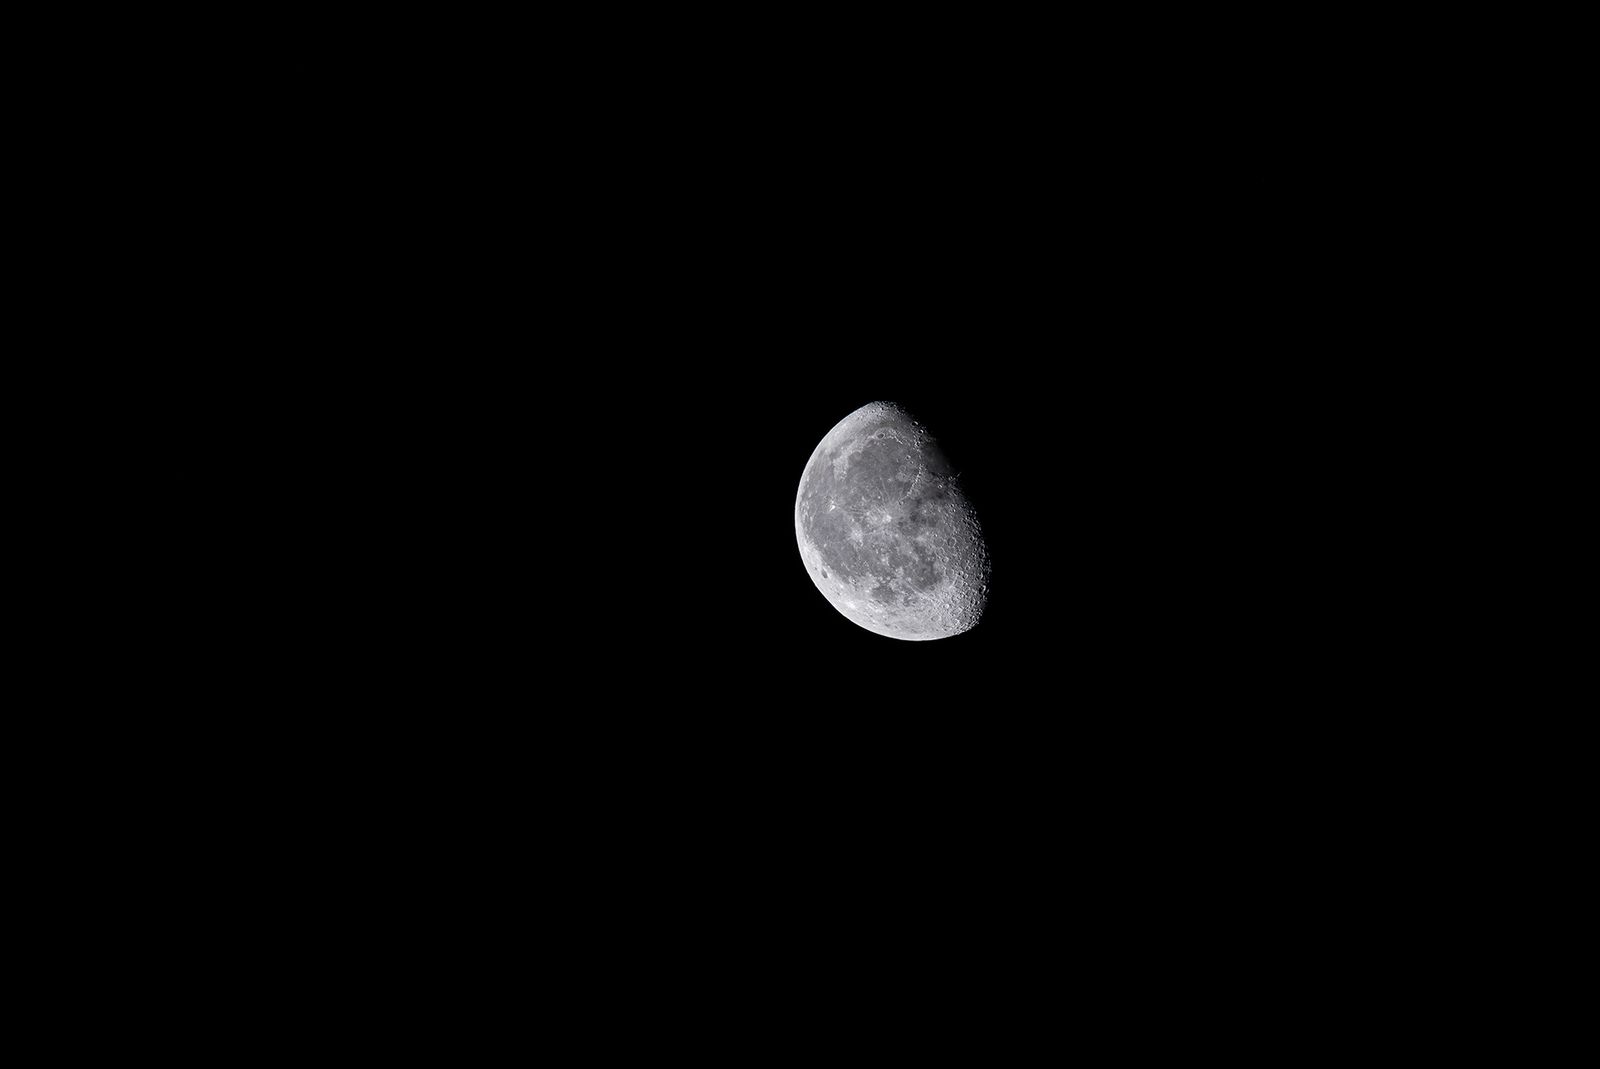 Kuu ilman rajaamista 400mm-objektiivilla